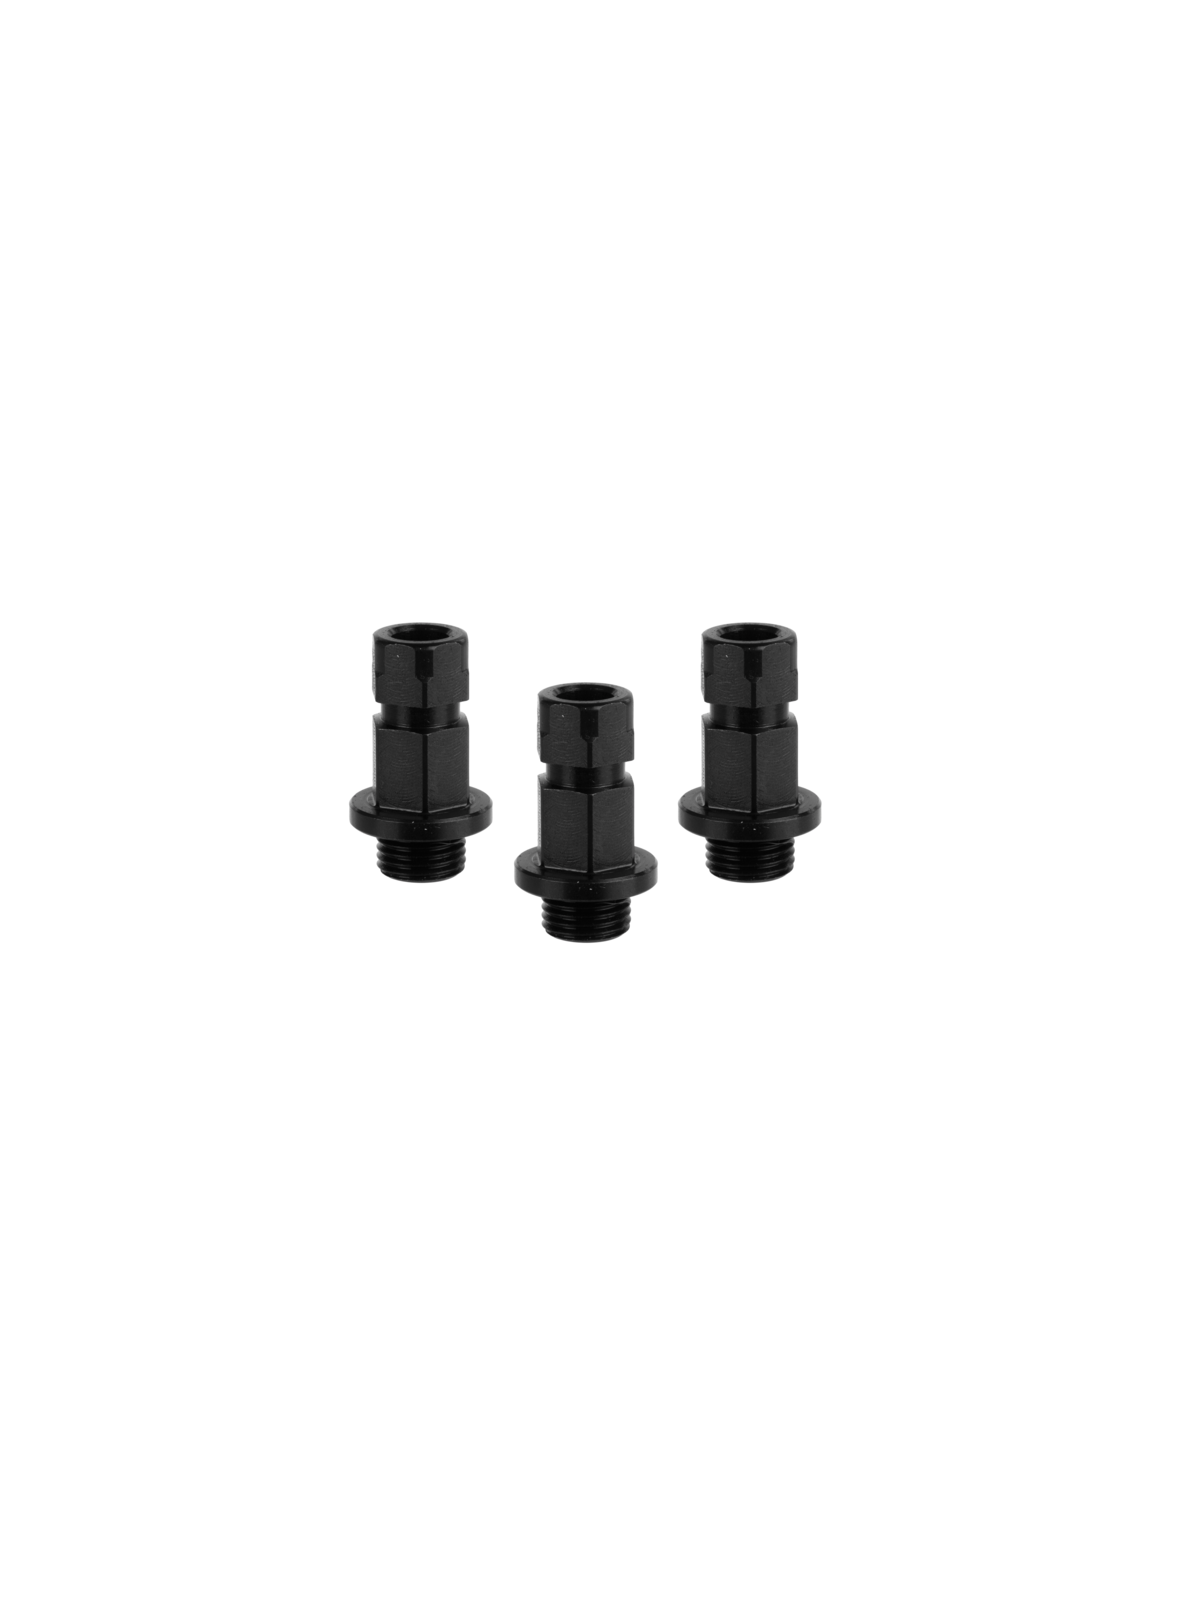 MXqs “ONE Click” adapter voor alle types Bi-metaal en Multi-purpose gatzagen 32mm tot 150mm (3 stuks) Mandrex | JVL-Europe